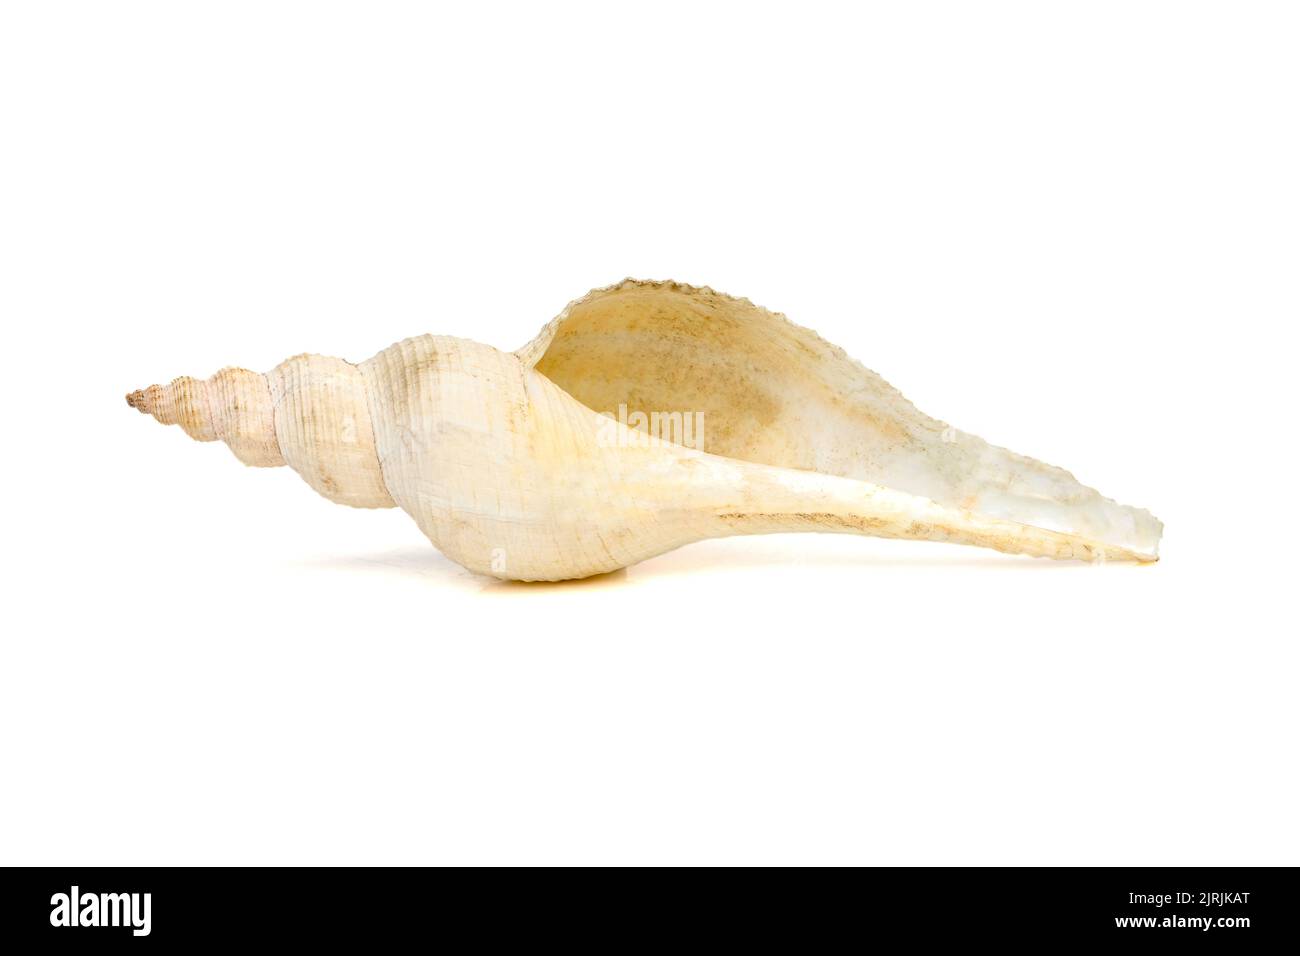 Imagen de conchas de caracola de cola larga blancas sobre fondo blanco. Animales submarinos. Conchas marinas. Foto de stock